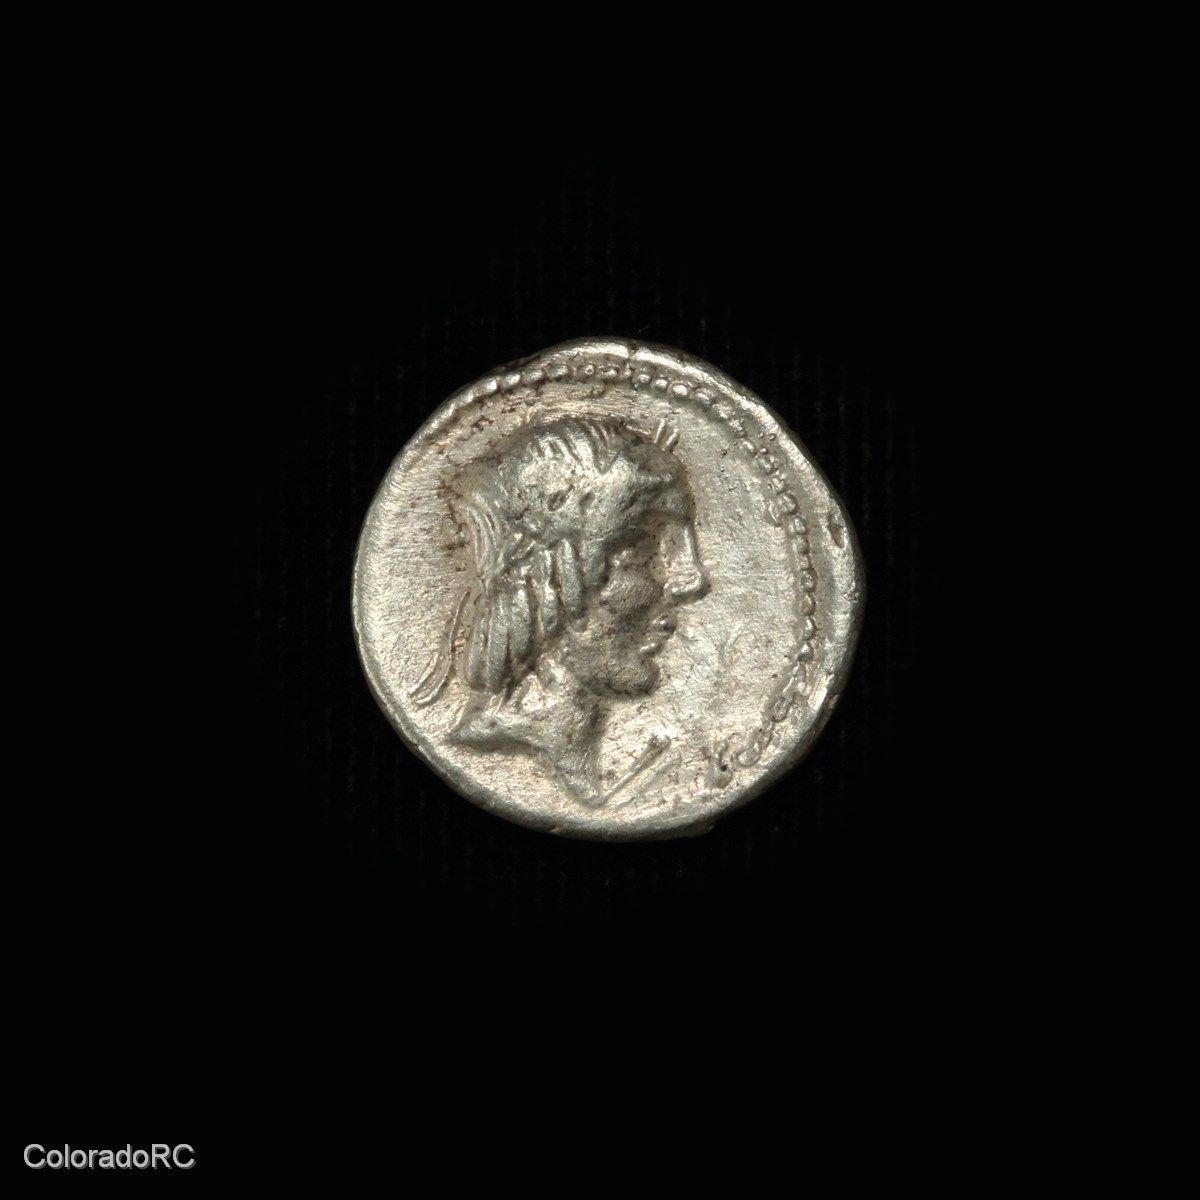 Roman Republic Silver Denarius Coin 90 BC